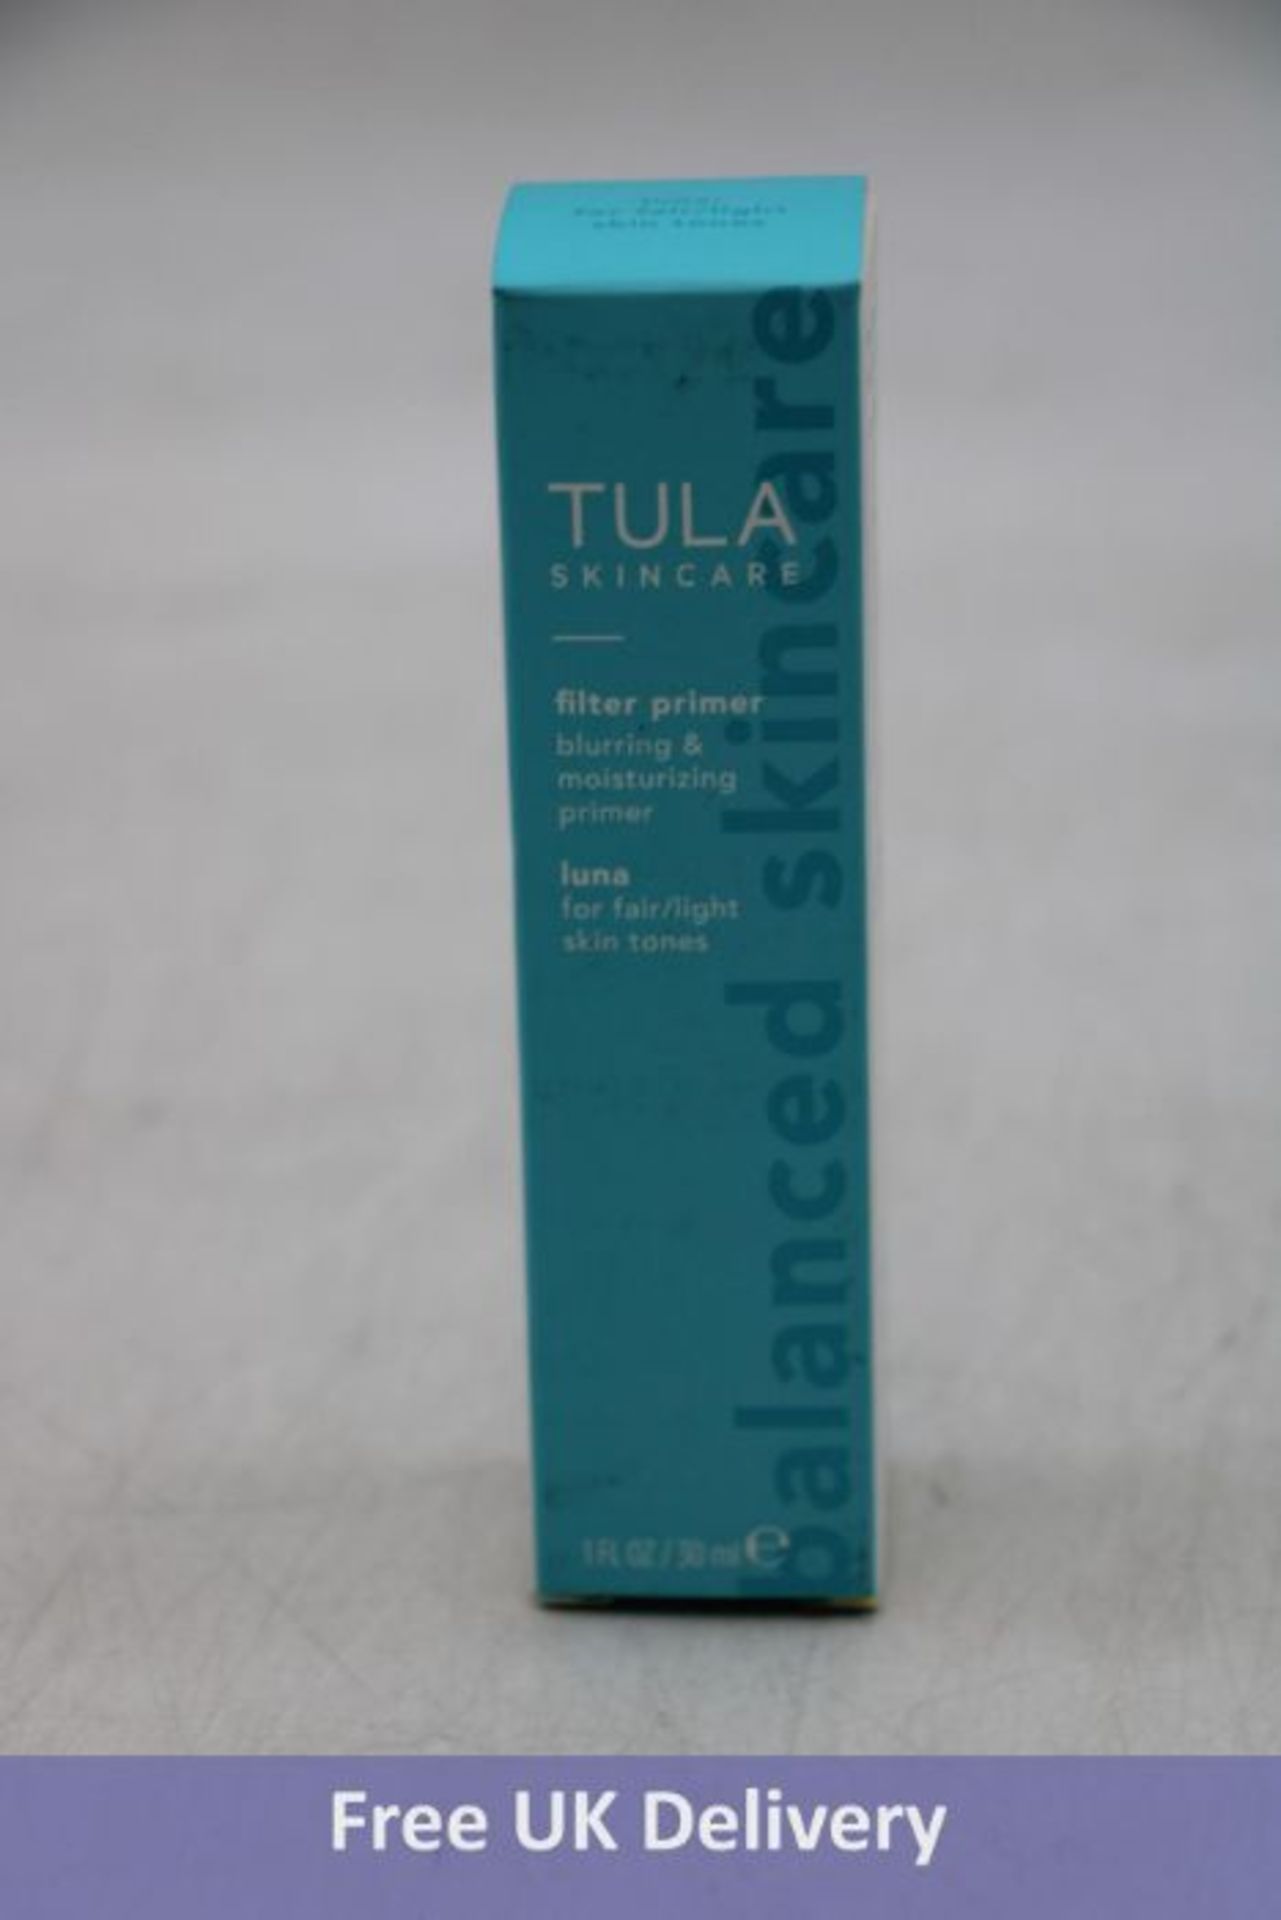 Two Tula Skin Care Blurring & Moisturizing Filter Primer's for Light Skin Tones, 30ml